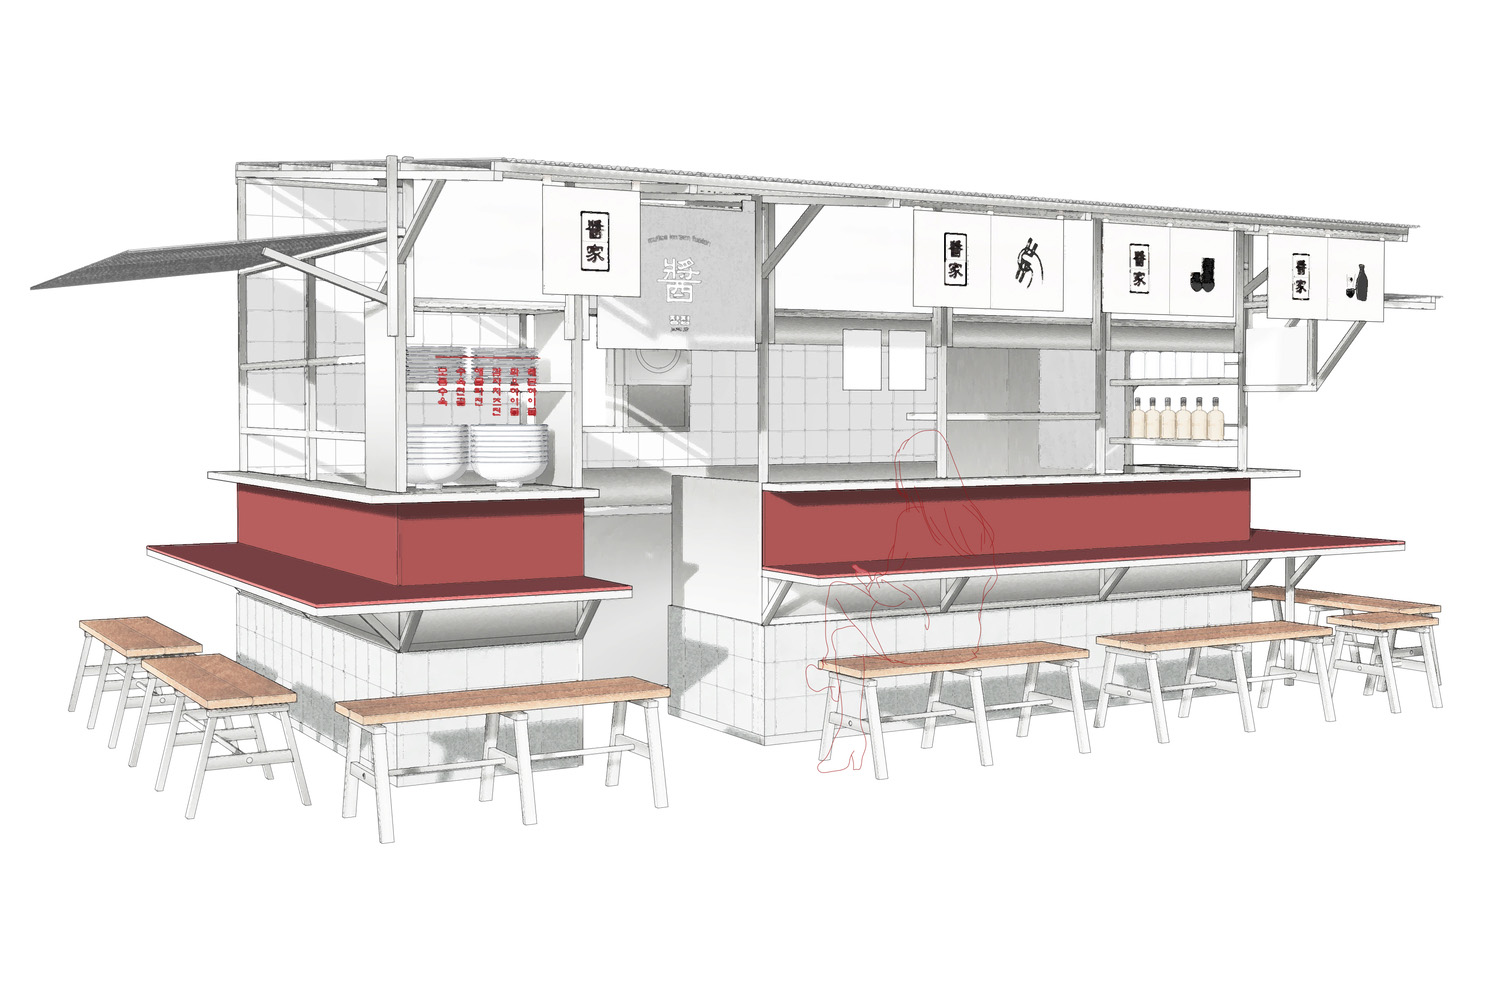 omo-studio,韩国,餐厅设计方案,餐厅装修,街边店设计,酒吧餐厅设计,酱家酒吧餐厅,55㎡